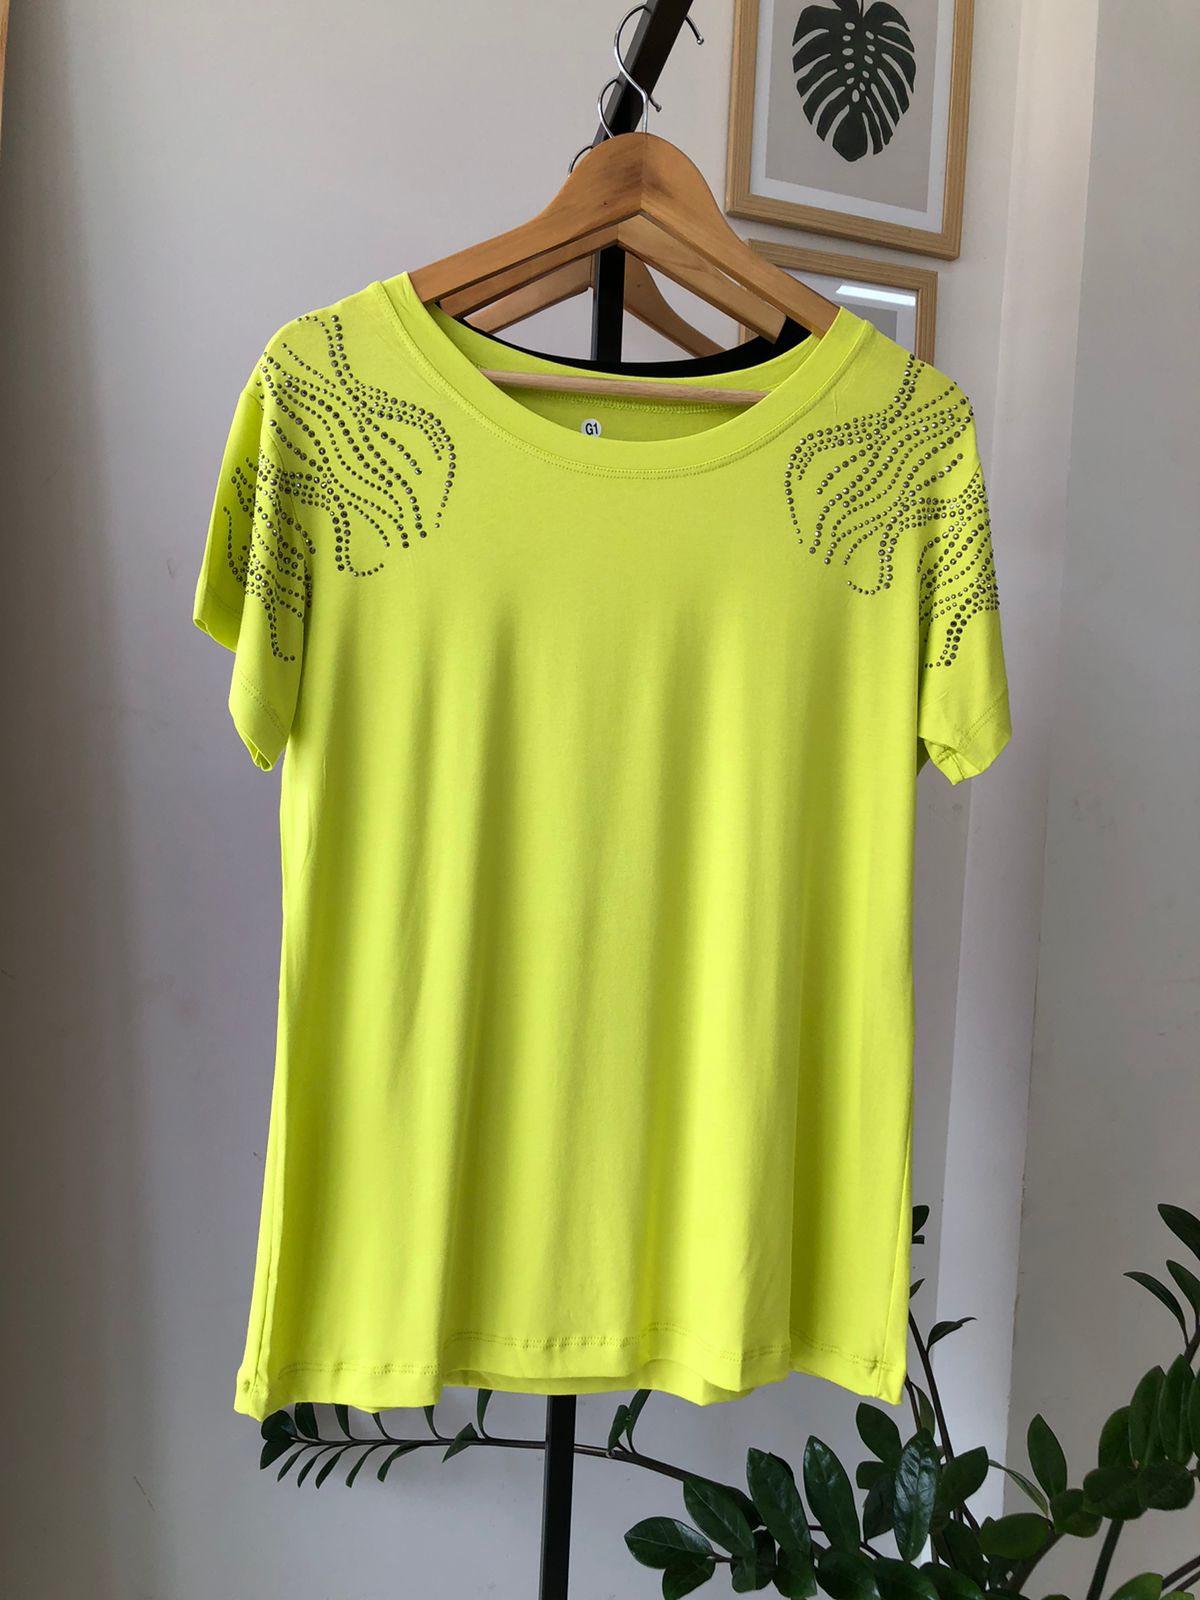 Camiseta Viscolycra Plus Size Aplicação - Caroline